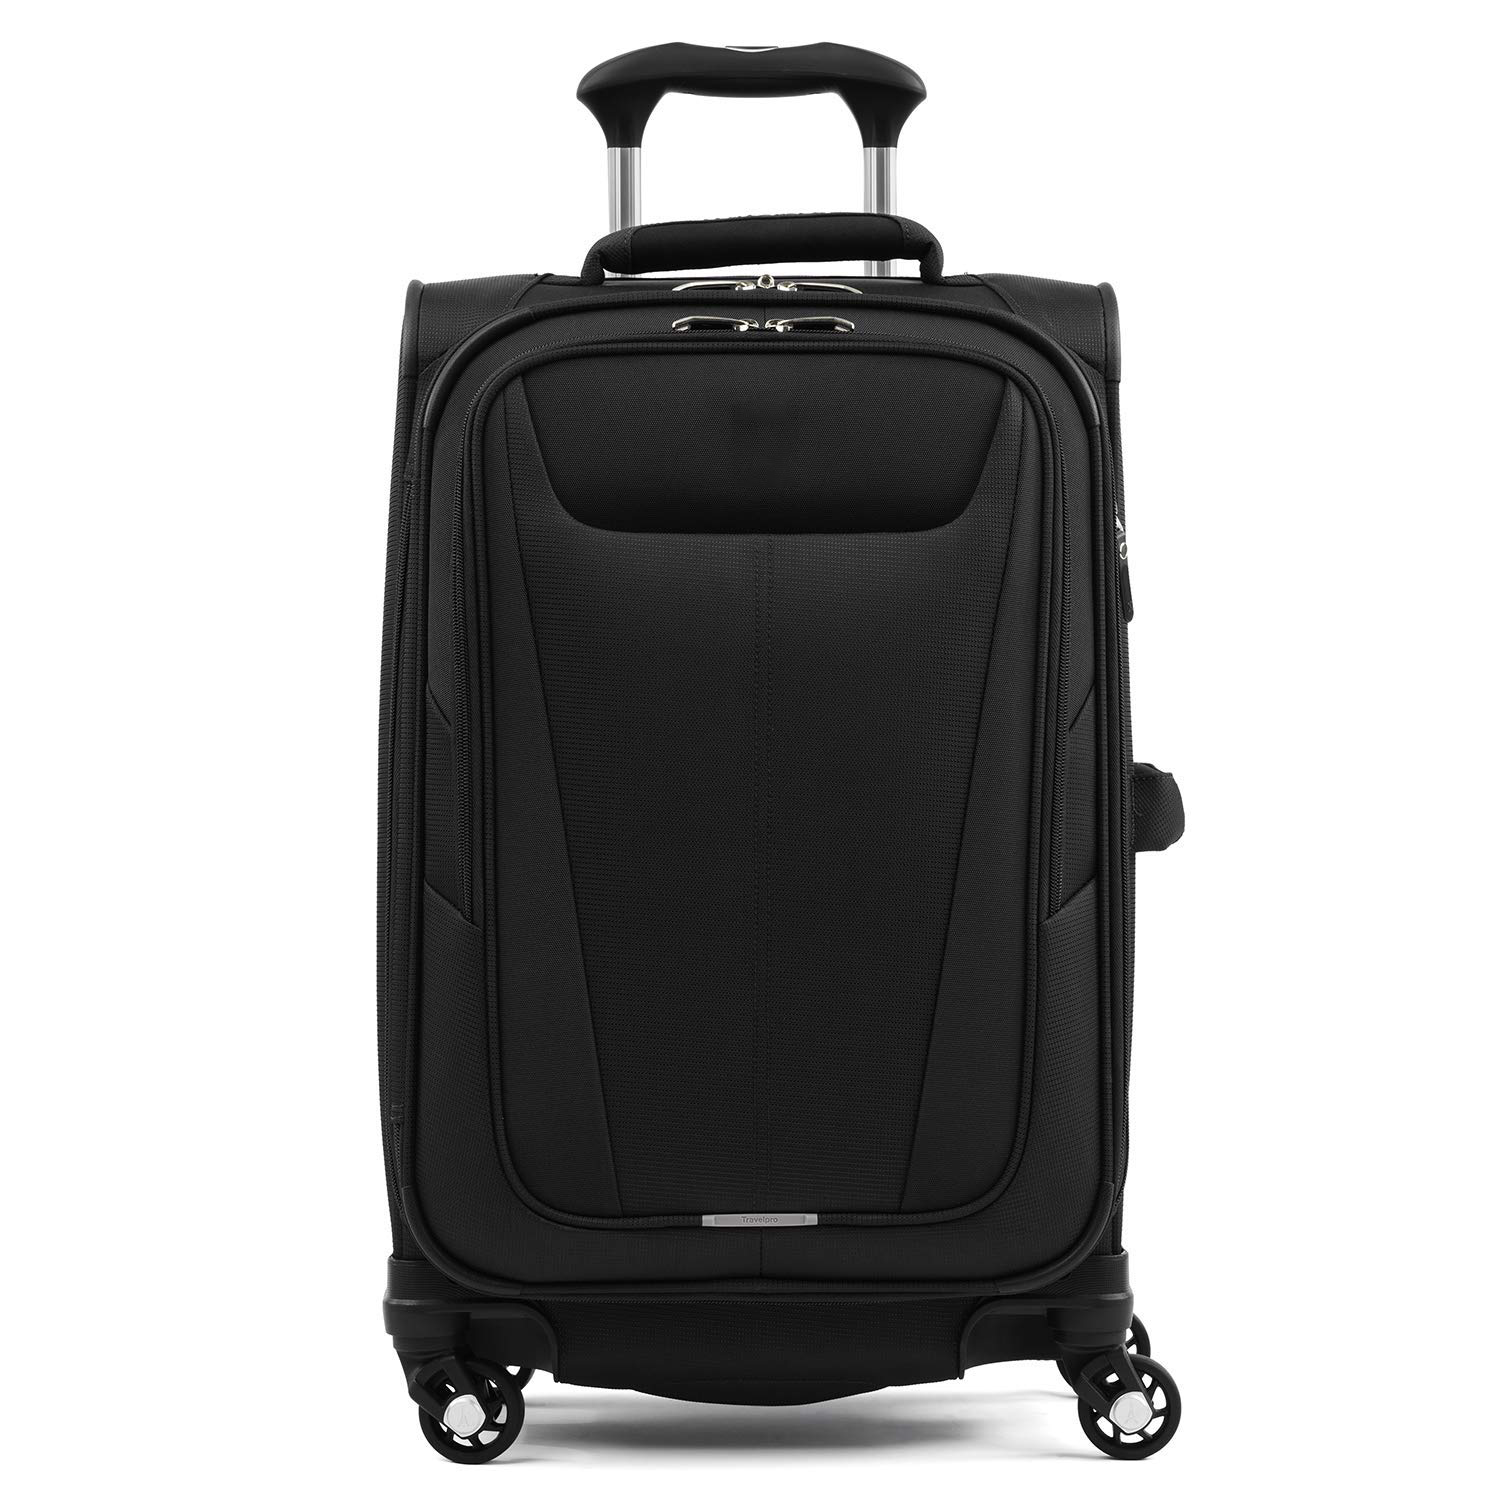 पहियों के साथ विस्तार योग्य सूटकेस पुरुषों और महिलाओं दोनों के लिए टिकाऊ है